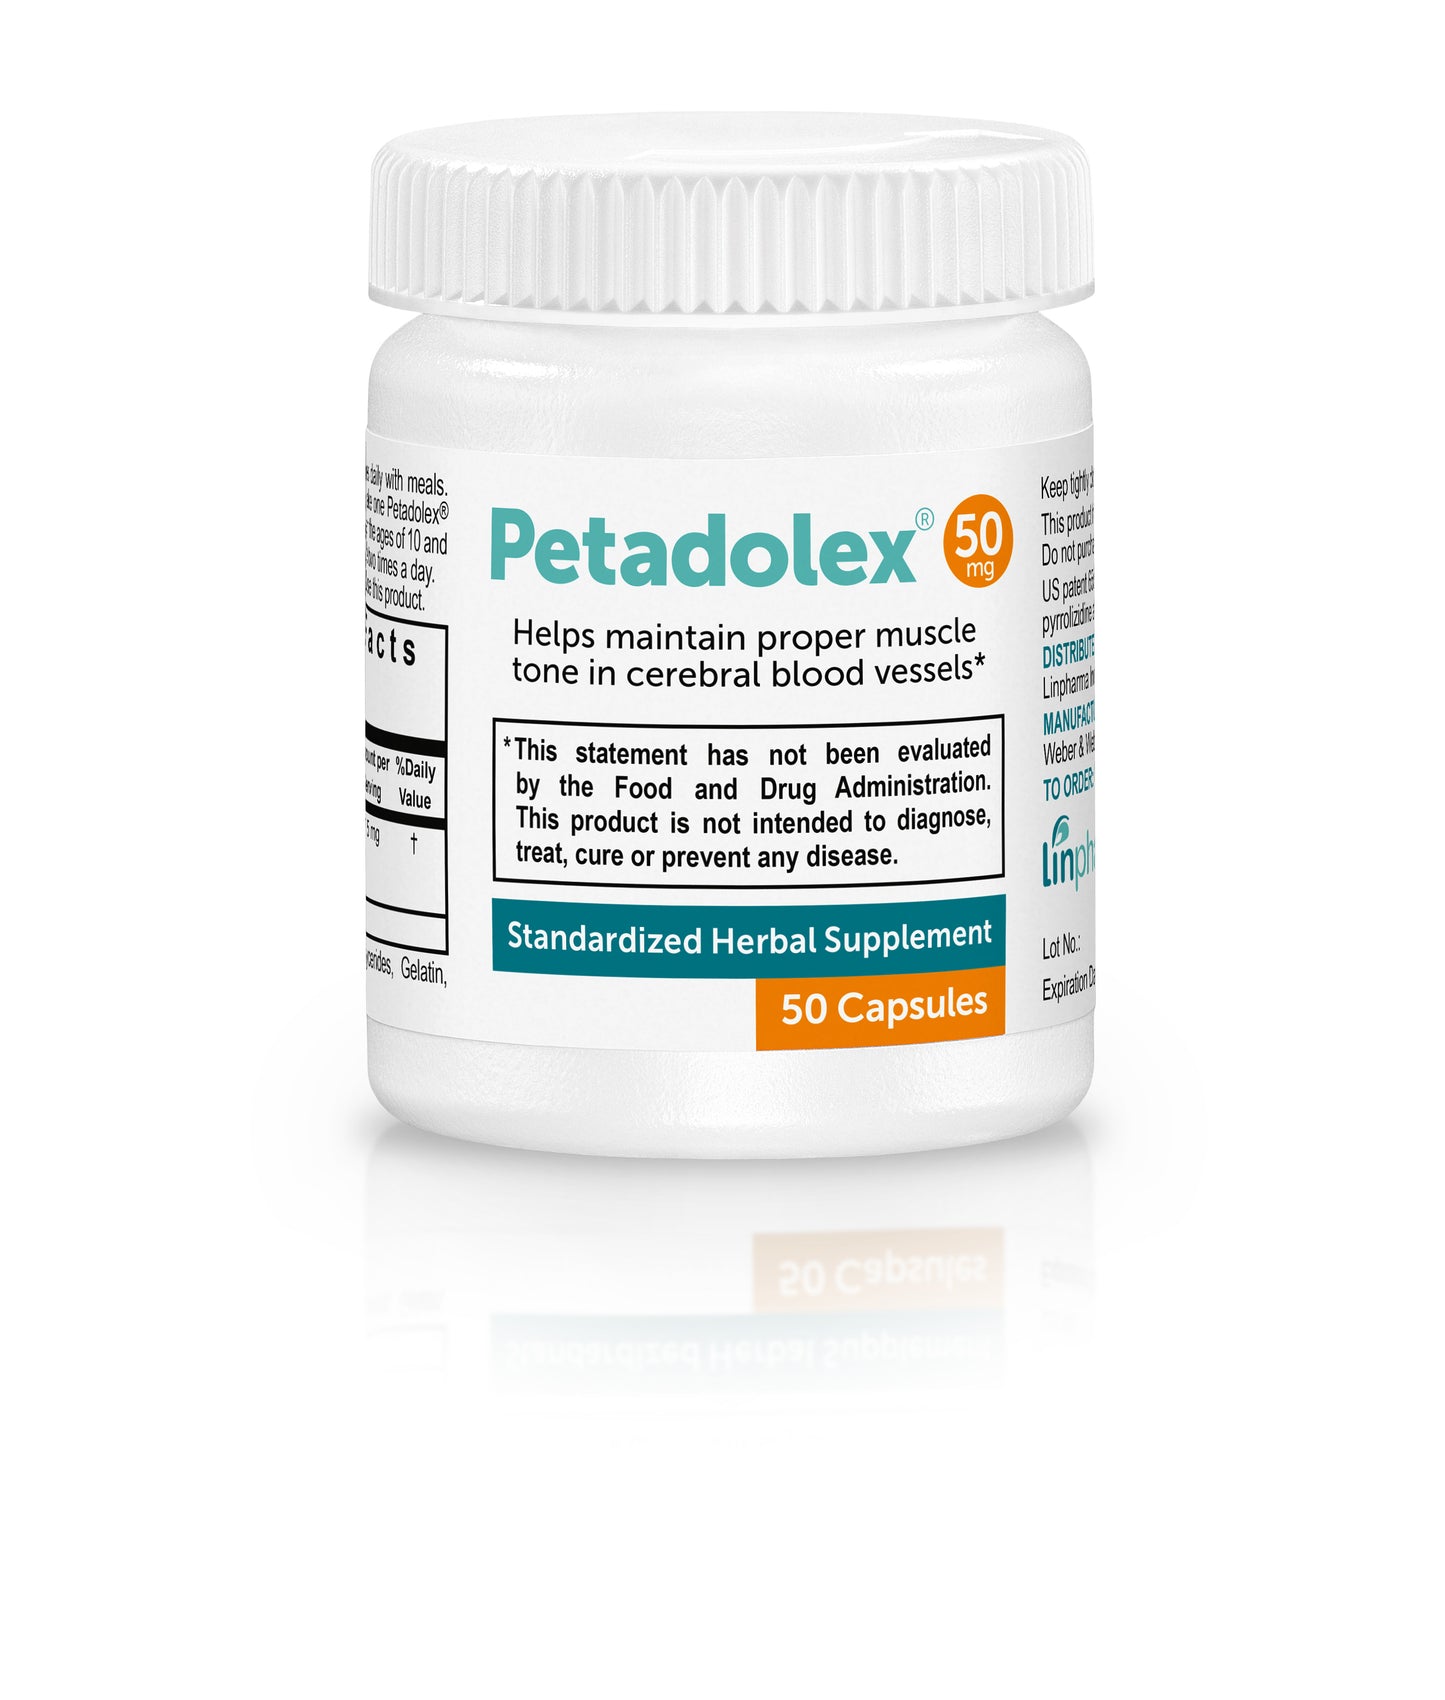 Petadolex 50 mg